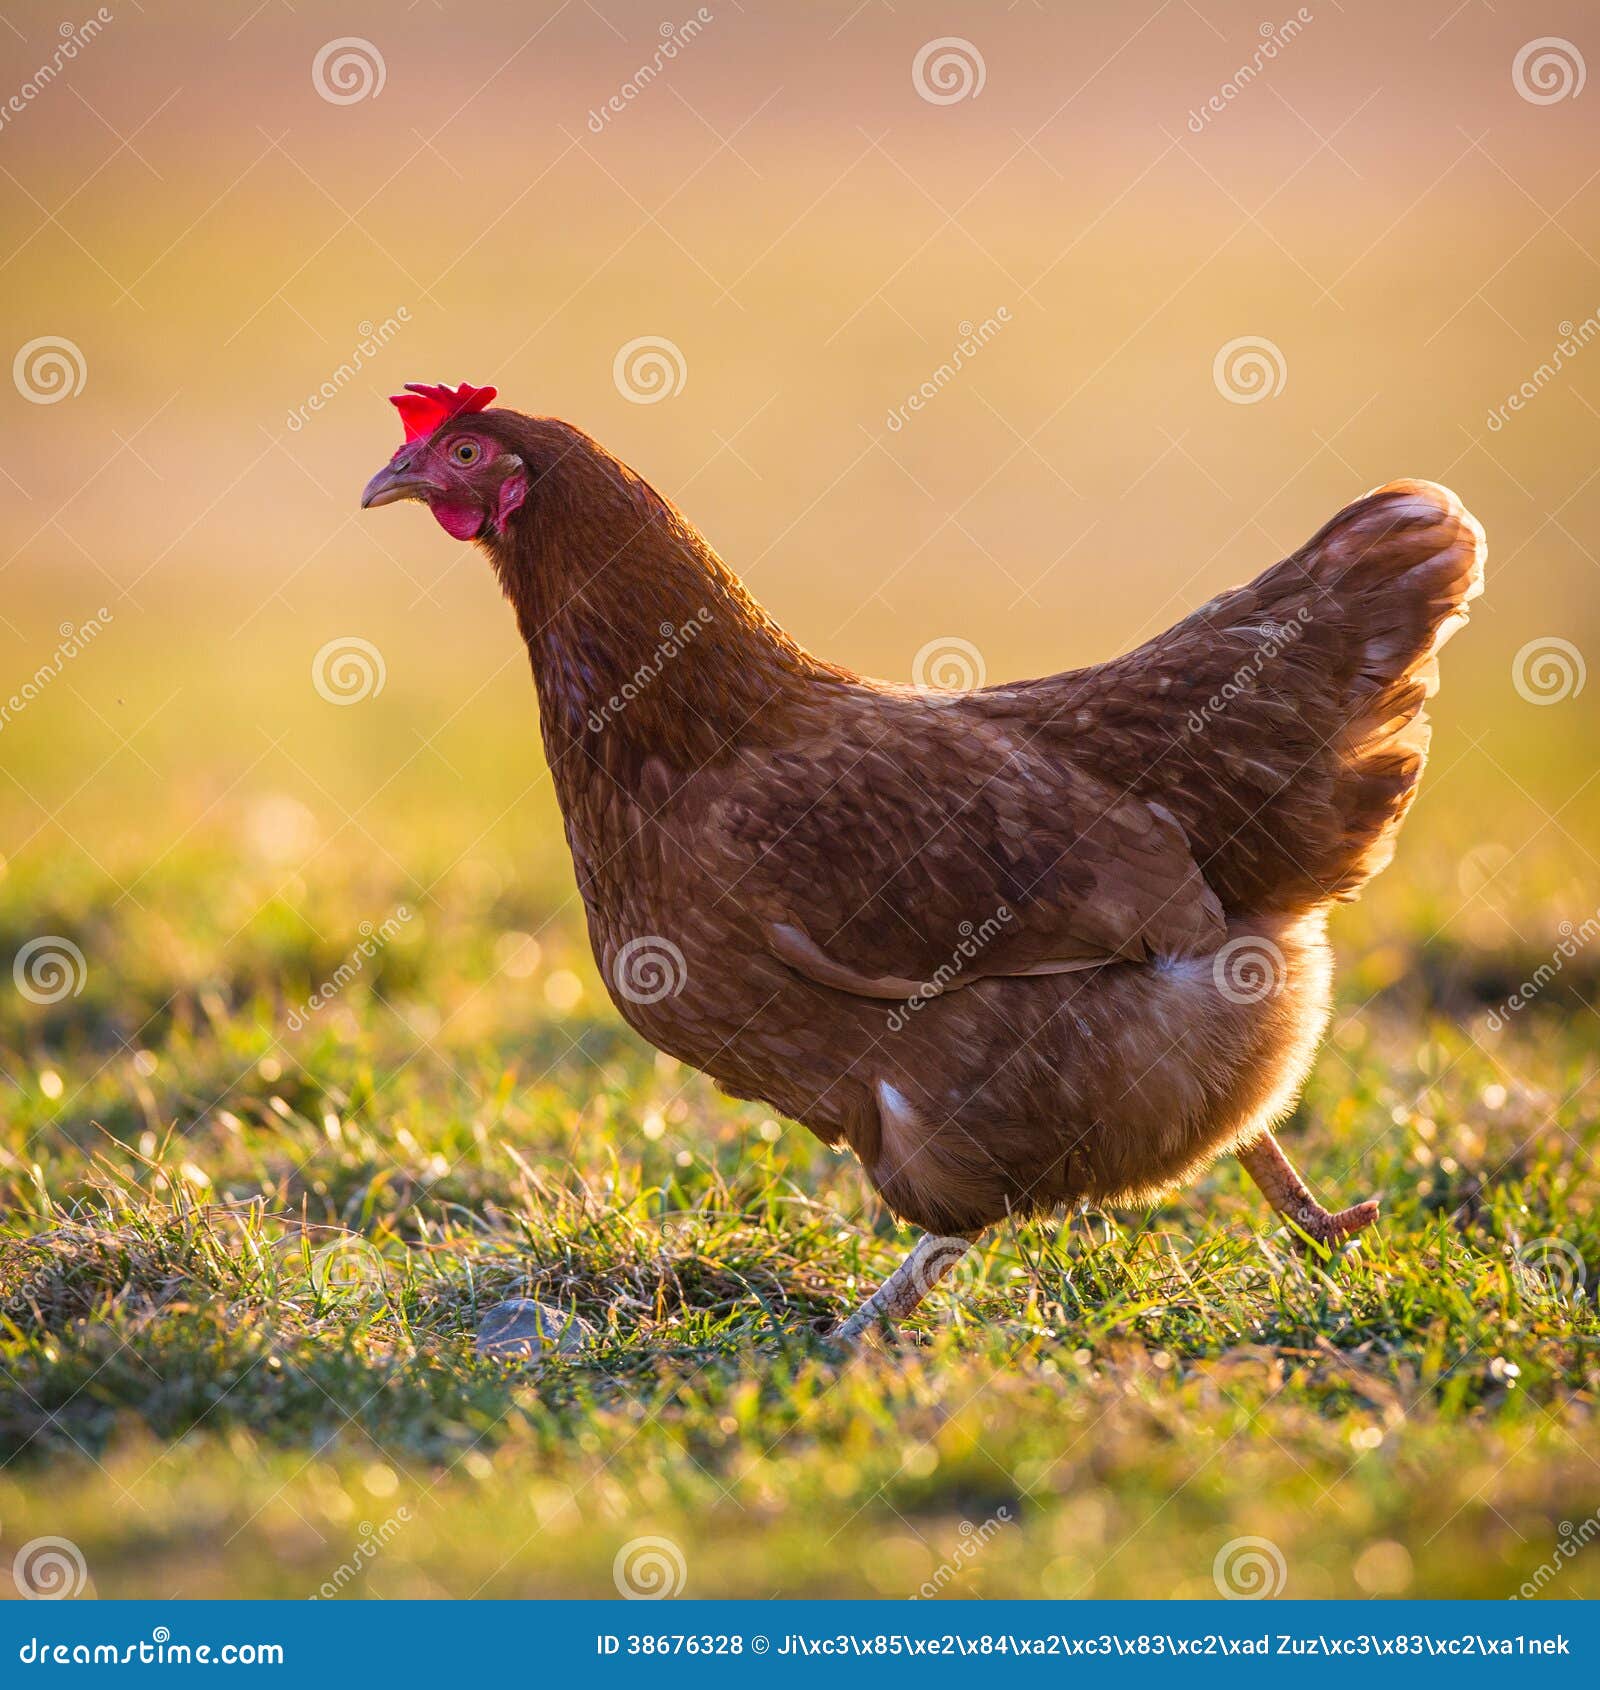 La gallina è uccello dell'azienda agricola all'aperto.